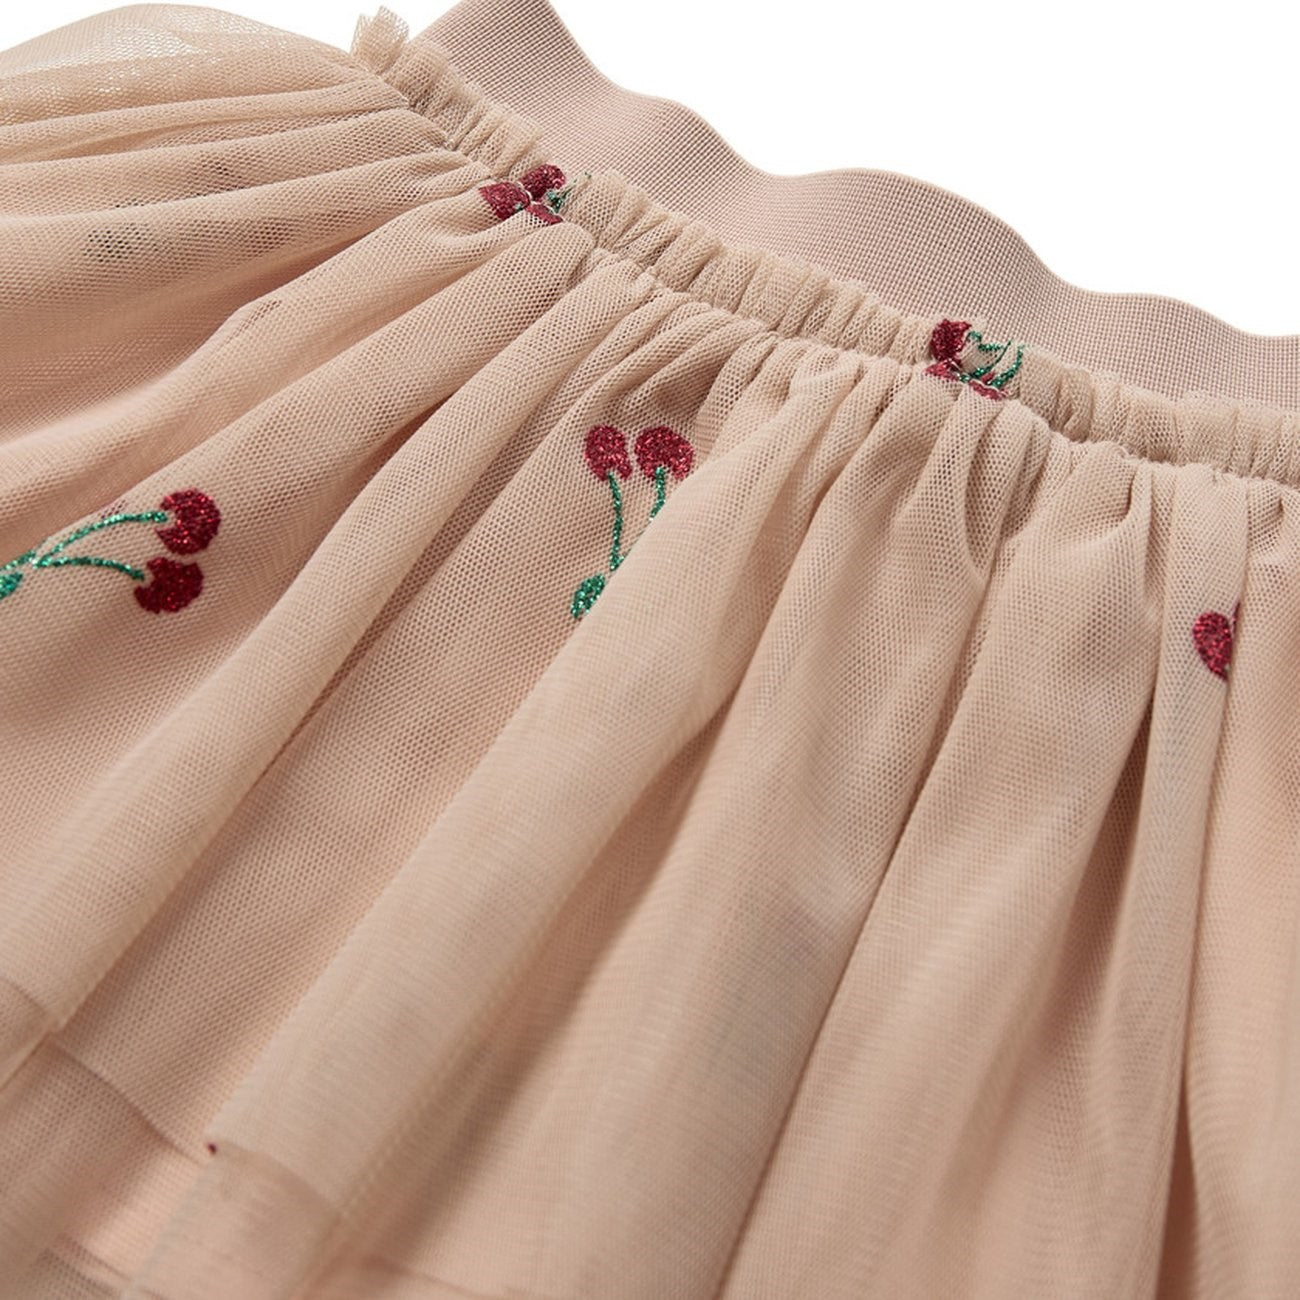 Sofie Schnoor Light Rose Skirt 5